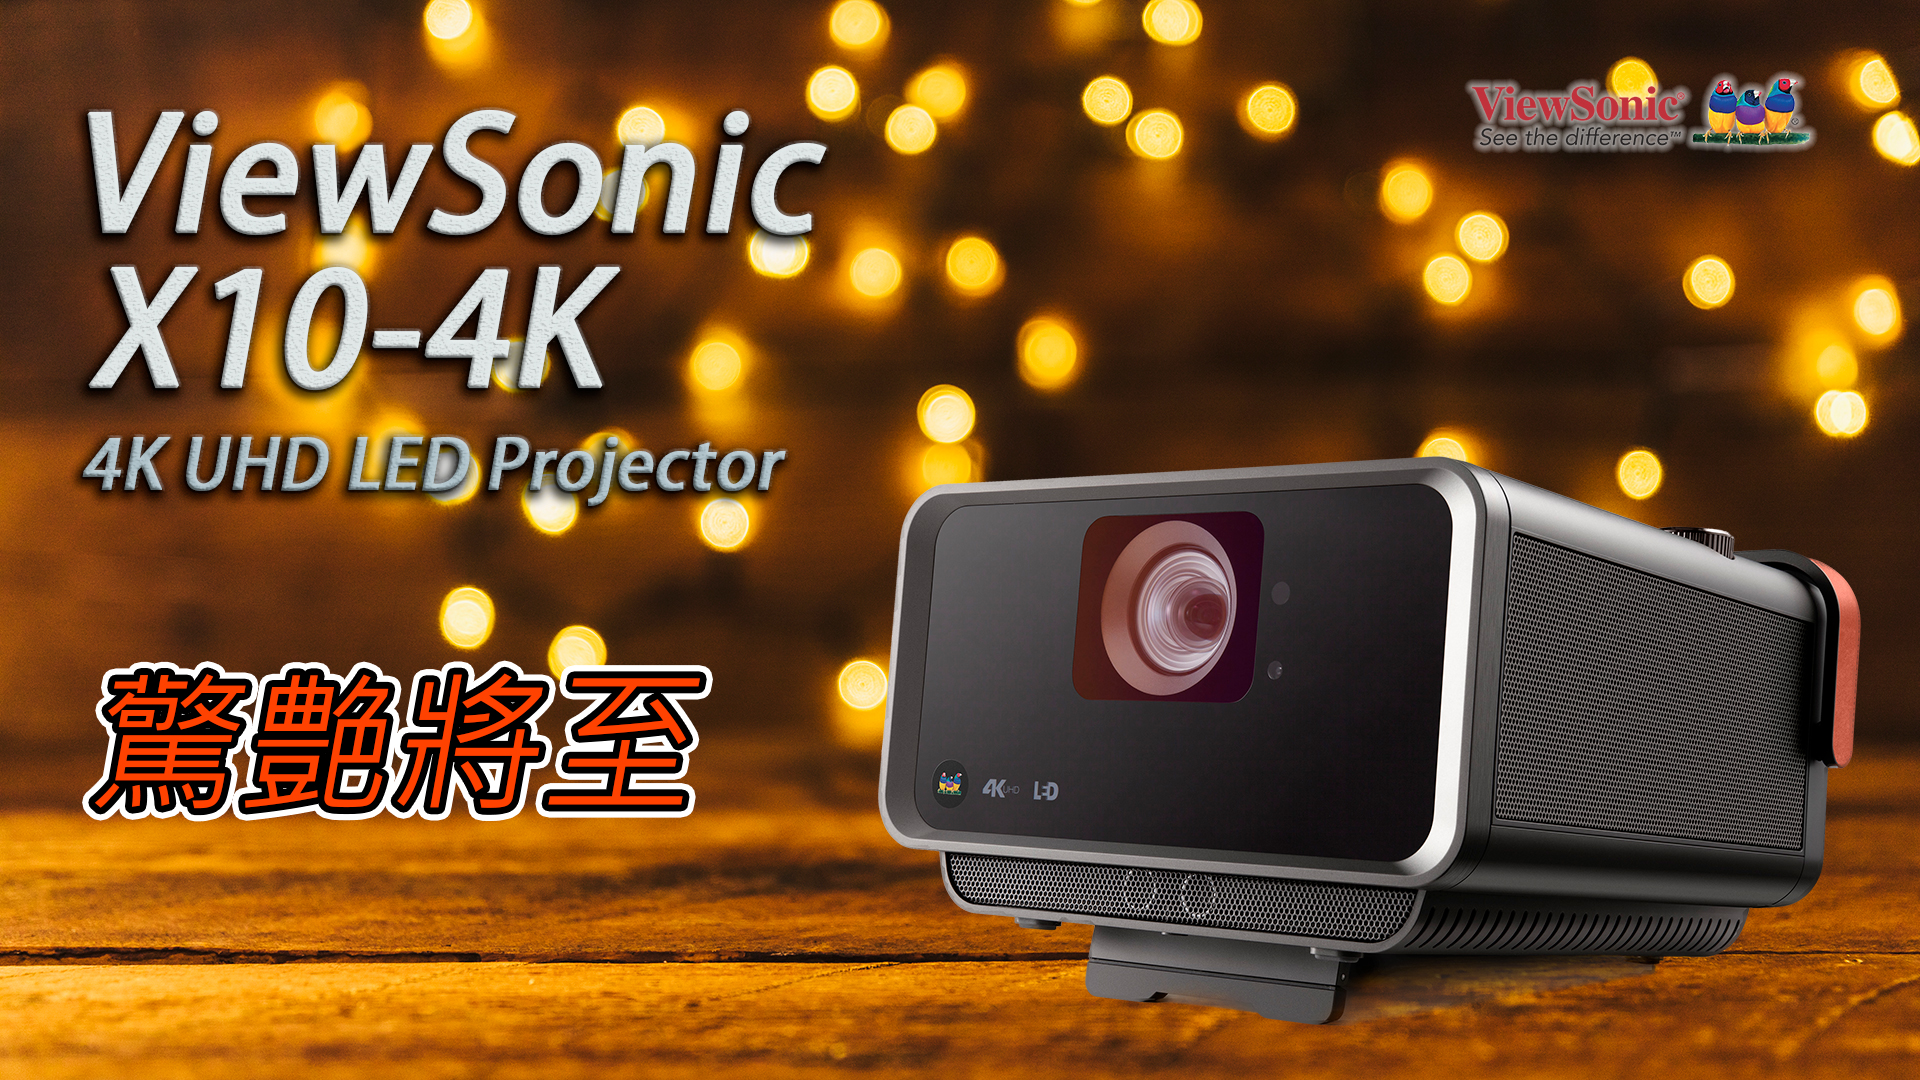 ViewSonic X10-4K 家庭影院投影機 驚艶將至